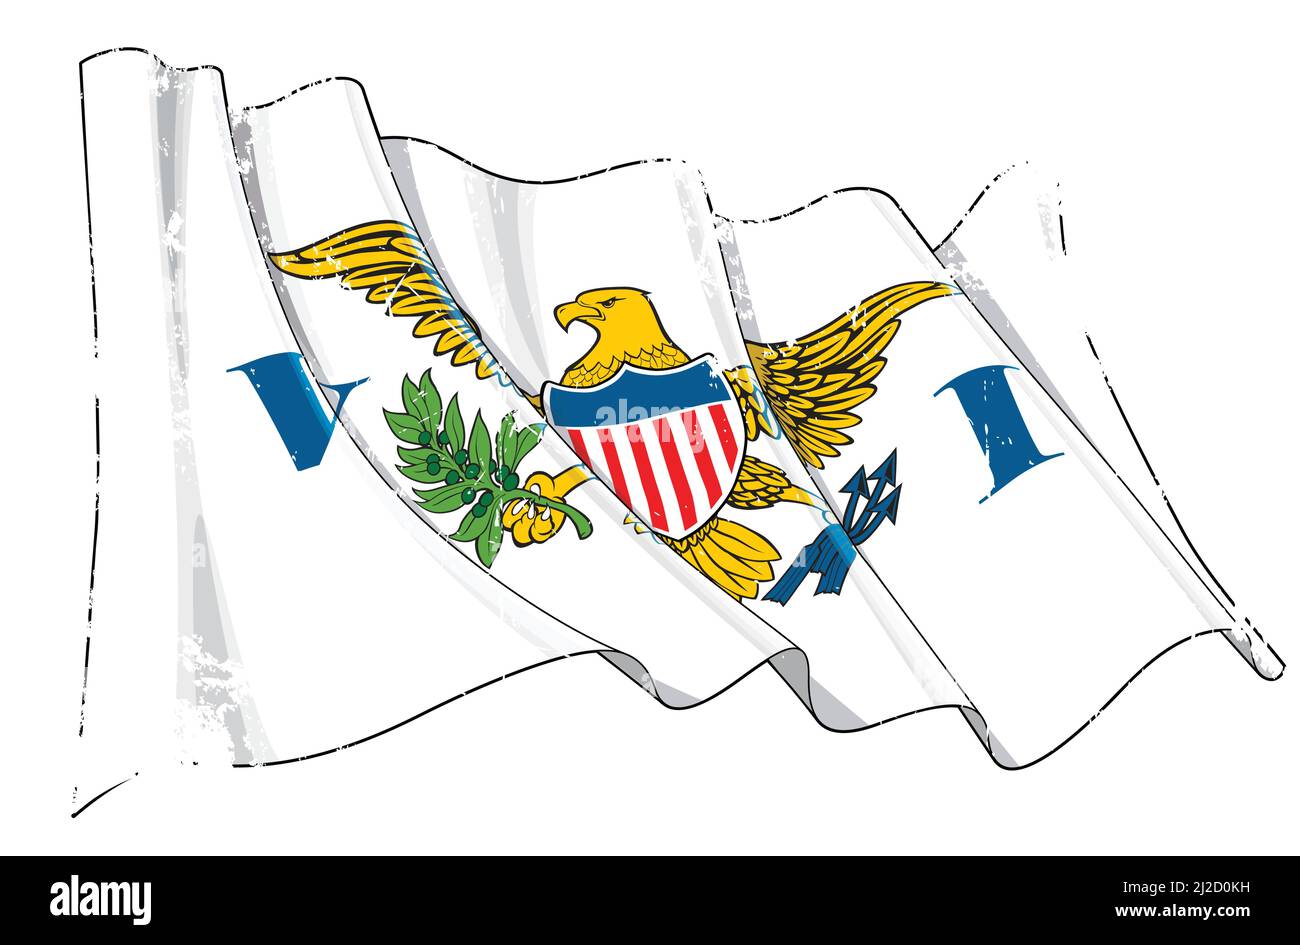 Vektor Strukturierte Grunge Illustration einer winkenden Flagge der amerikanischen Jungferninseln. Alle Elemente übersichtlich auf klar definierten Ebenen und Gruppen. Stock Vektor